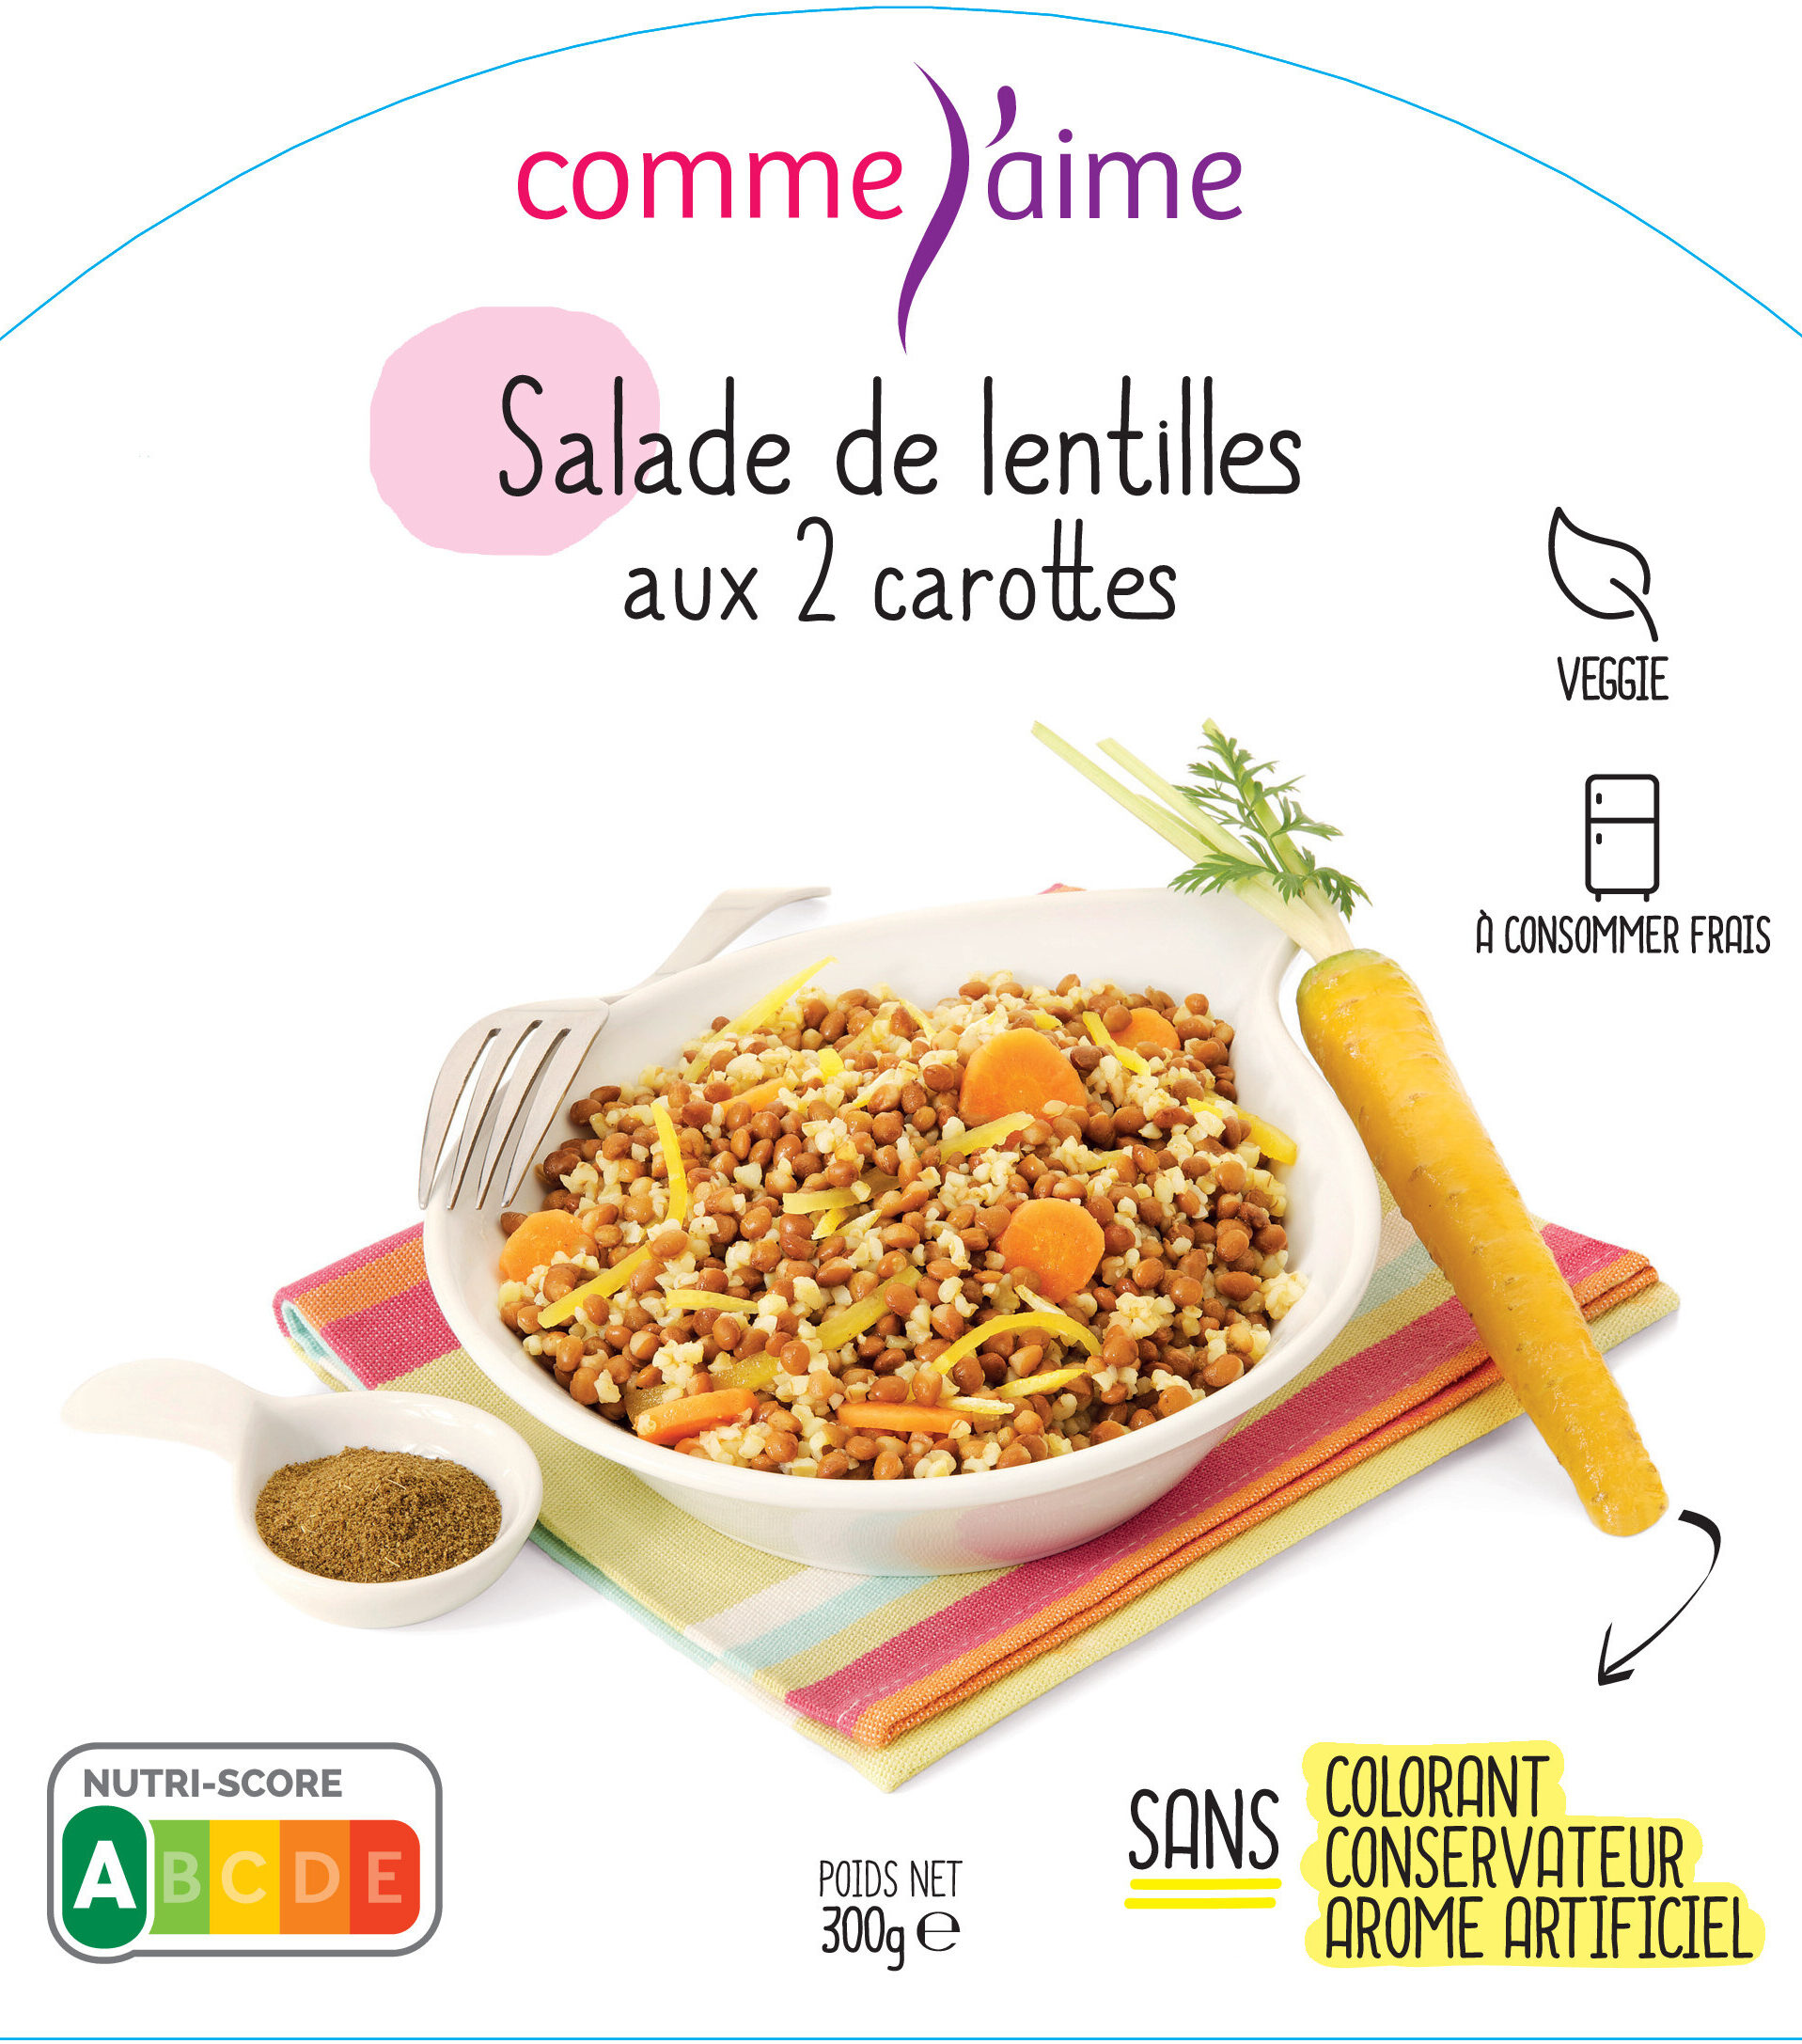 Salade de lentilles aux 2 carottes - Product - fr